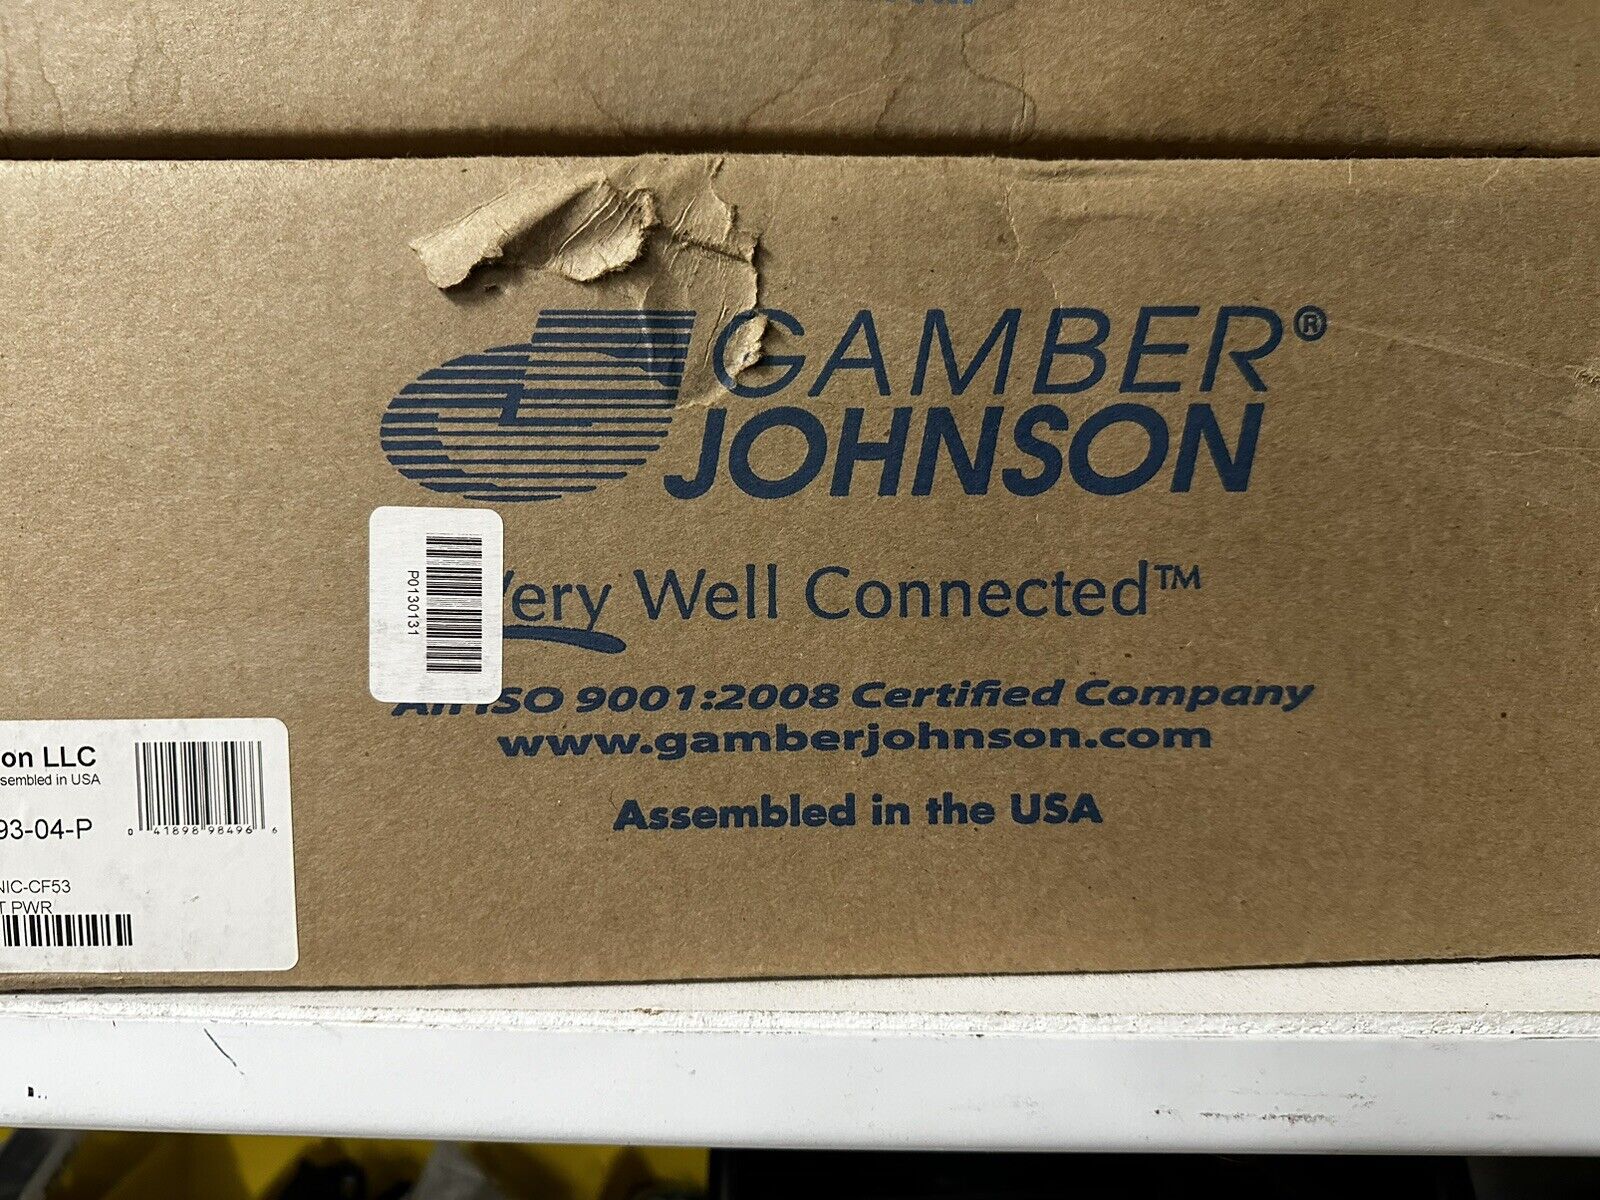 Brand new Gamber Johnson Vehicle Dock 4 Panasonic toughbook CF-53 7160-0393-04-P